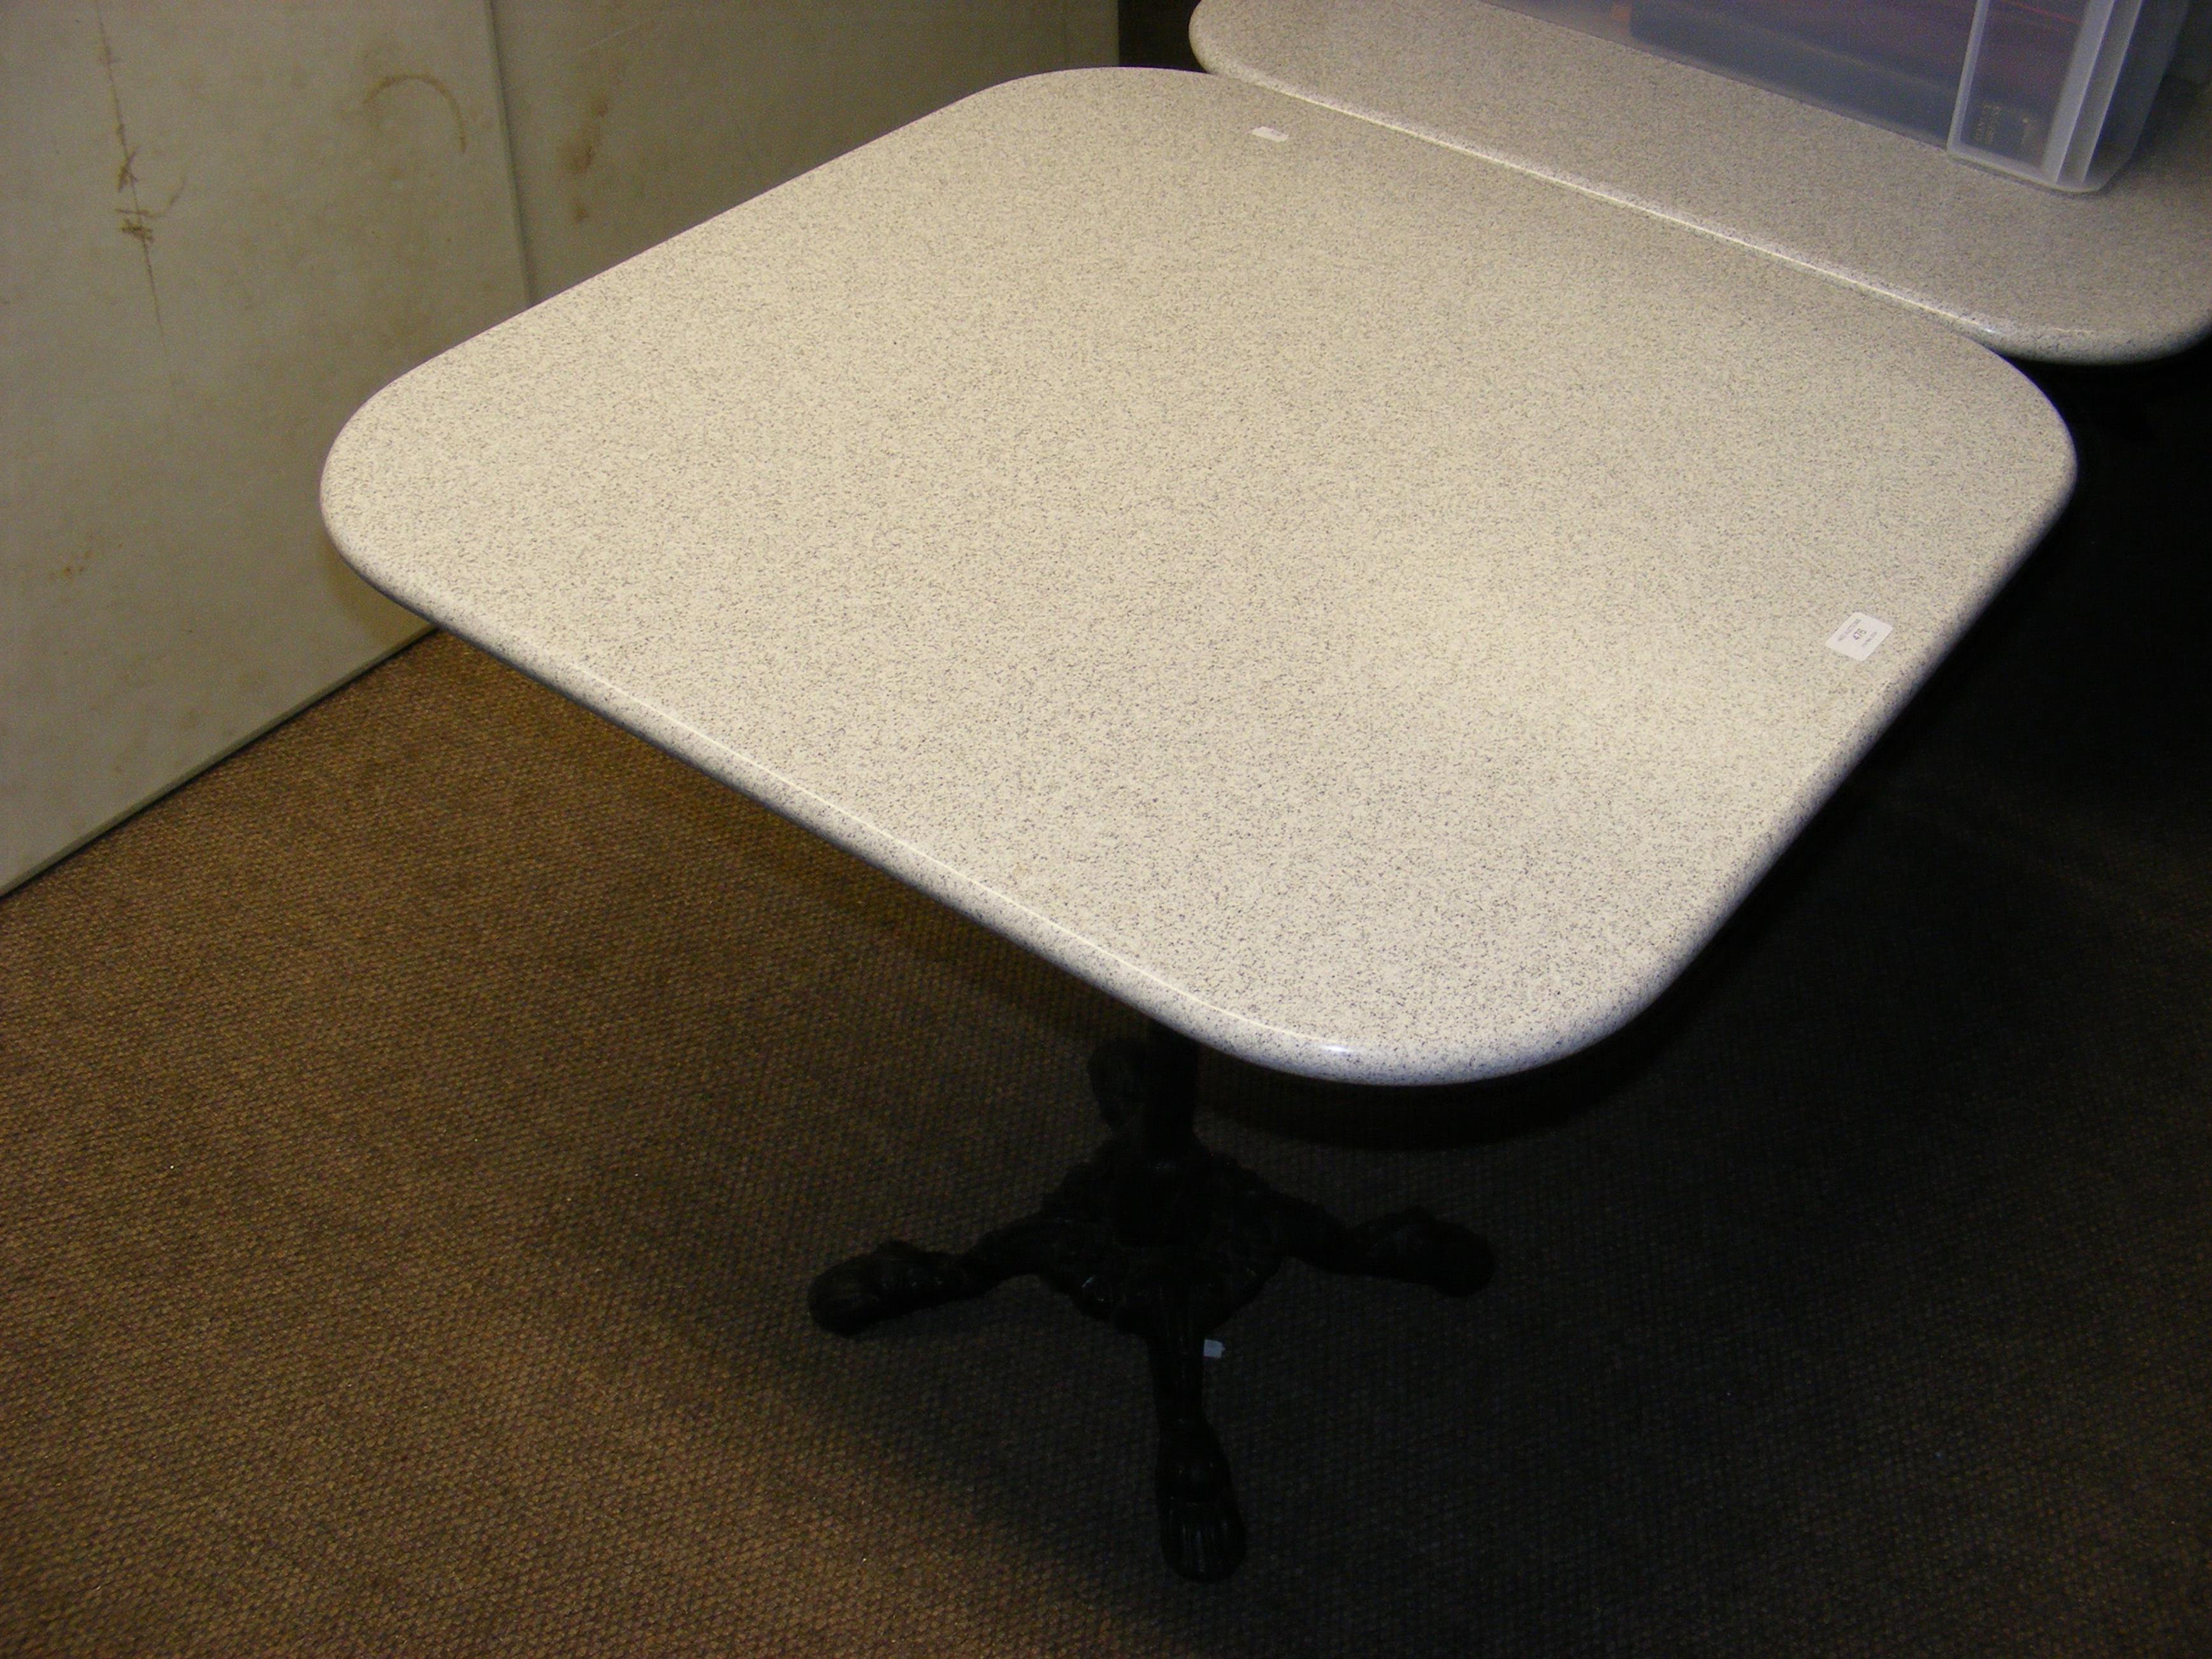 A white granite terrazzo effect bistro table, with